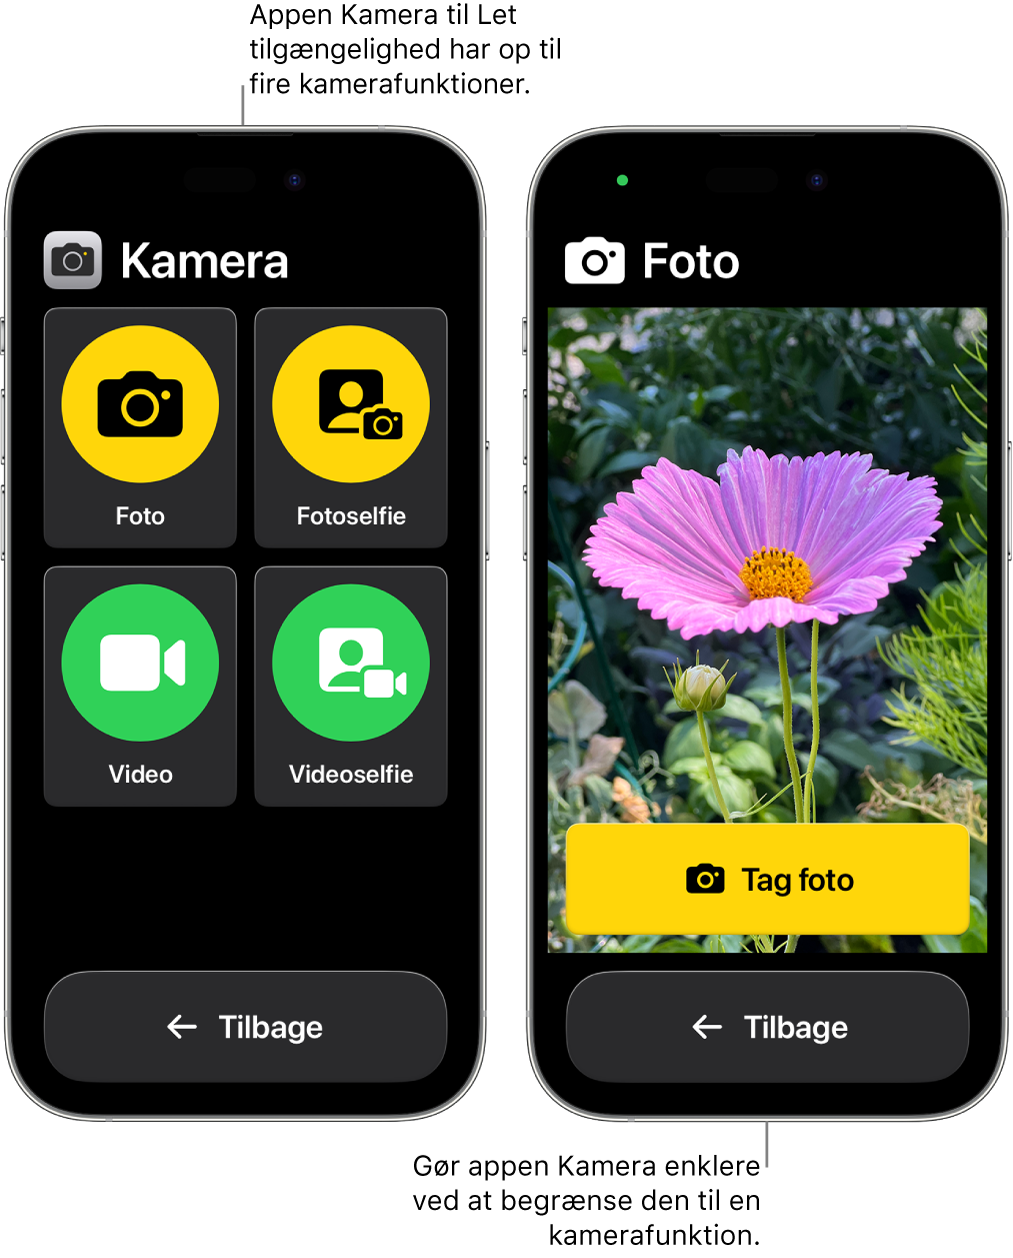 To iPhone-enheder i Let tilgængelighed. En iPhone, der viser appen Kamera med kamerafunktioner, som brugeren kan vælge mellem, f.eks. Video eller Fotoselfie. Den anden iPhone viser appen Kamera med en enkelt funktion til at tage fotos.